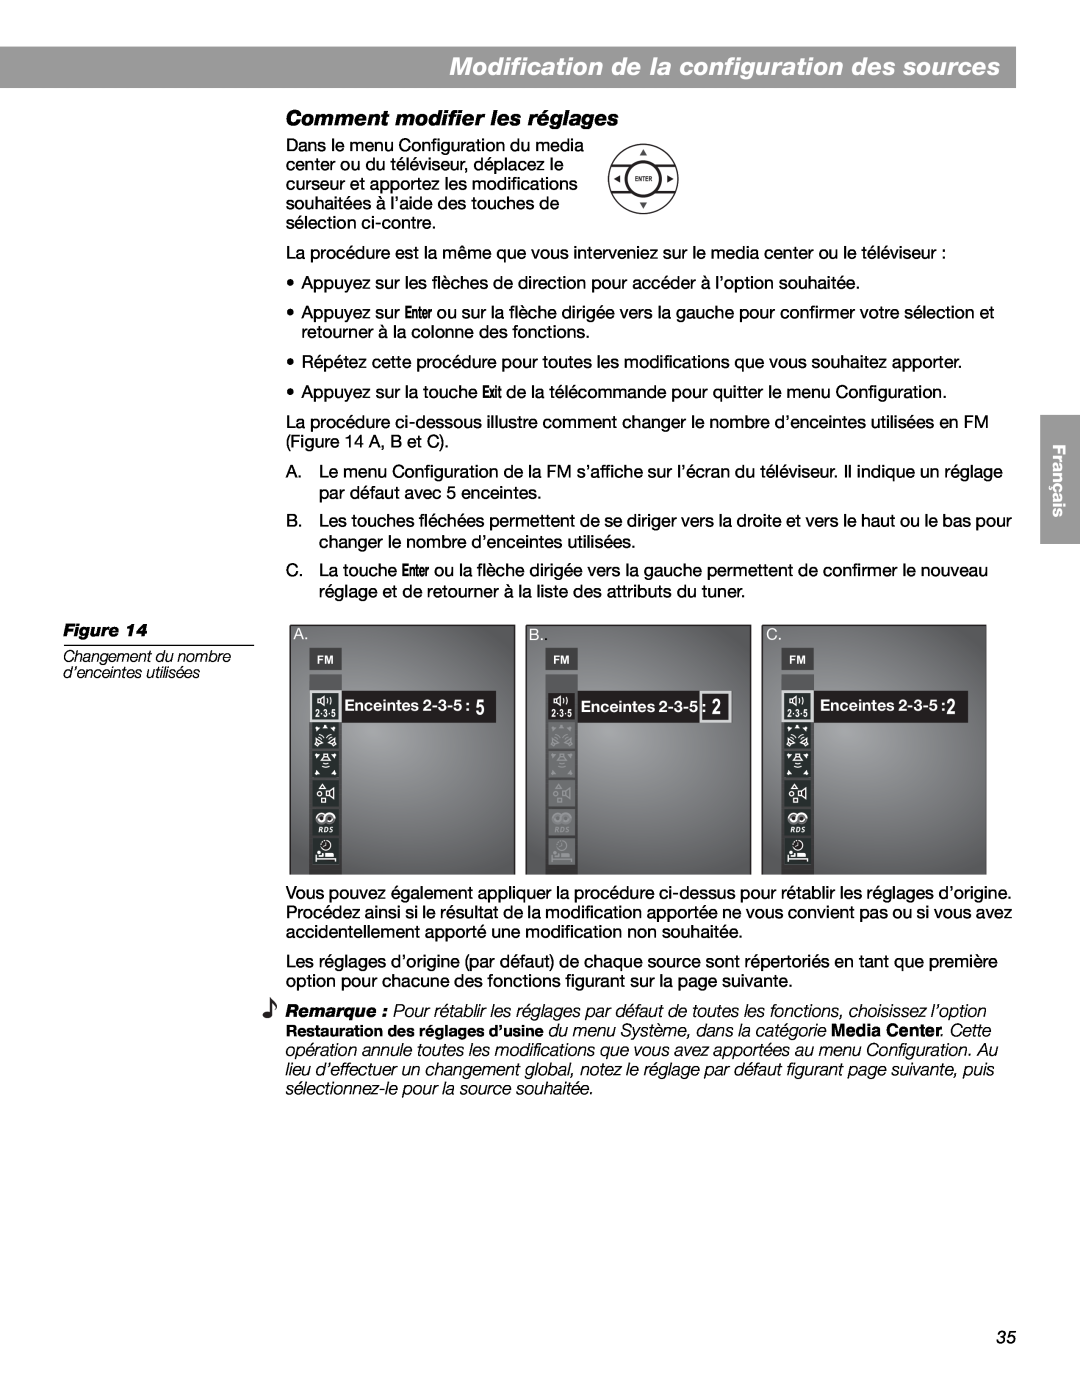 Bose LIFESTYLE 38, LIFESTYLE 48 manual Modification de la configuration des sources, Comment modifier les réglages, Figure 